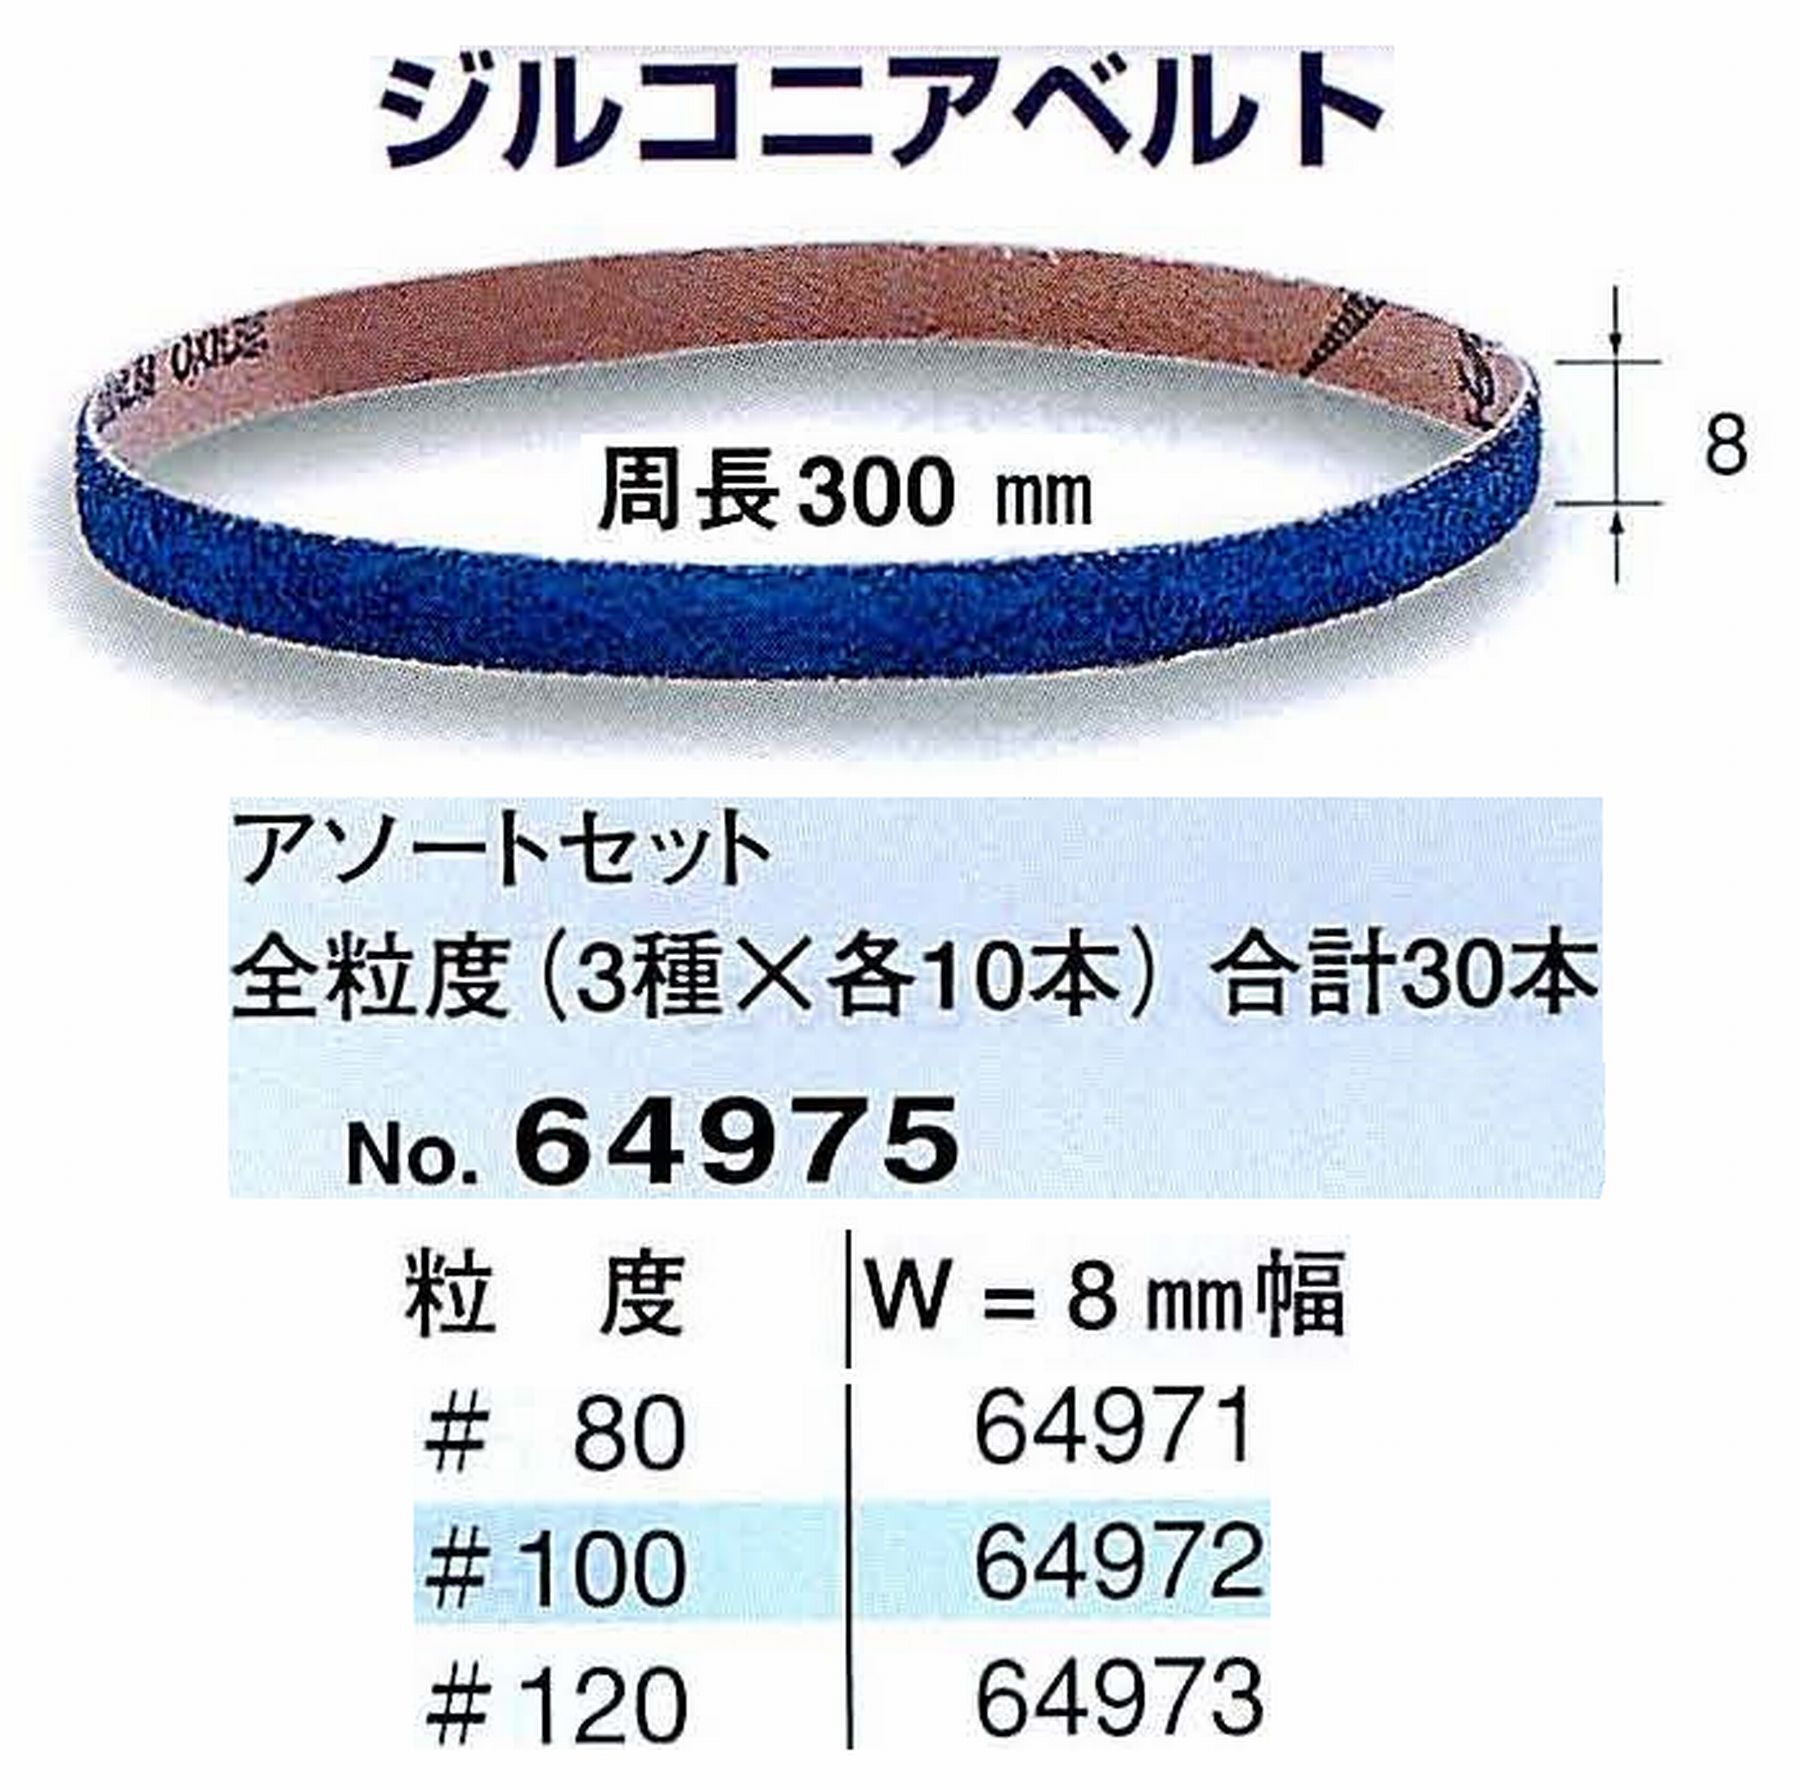 ナカニシ/NAKANISHI 小型ハンディベルトサンダー(電動・エアー) ファインベルトサンダー専用工具 ジルコニアベルトアソートセット 全粒度(3種×各10本)合計30本 64975